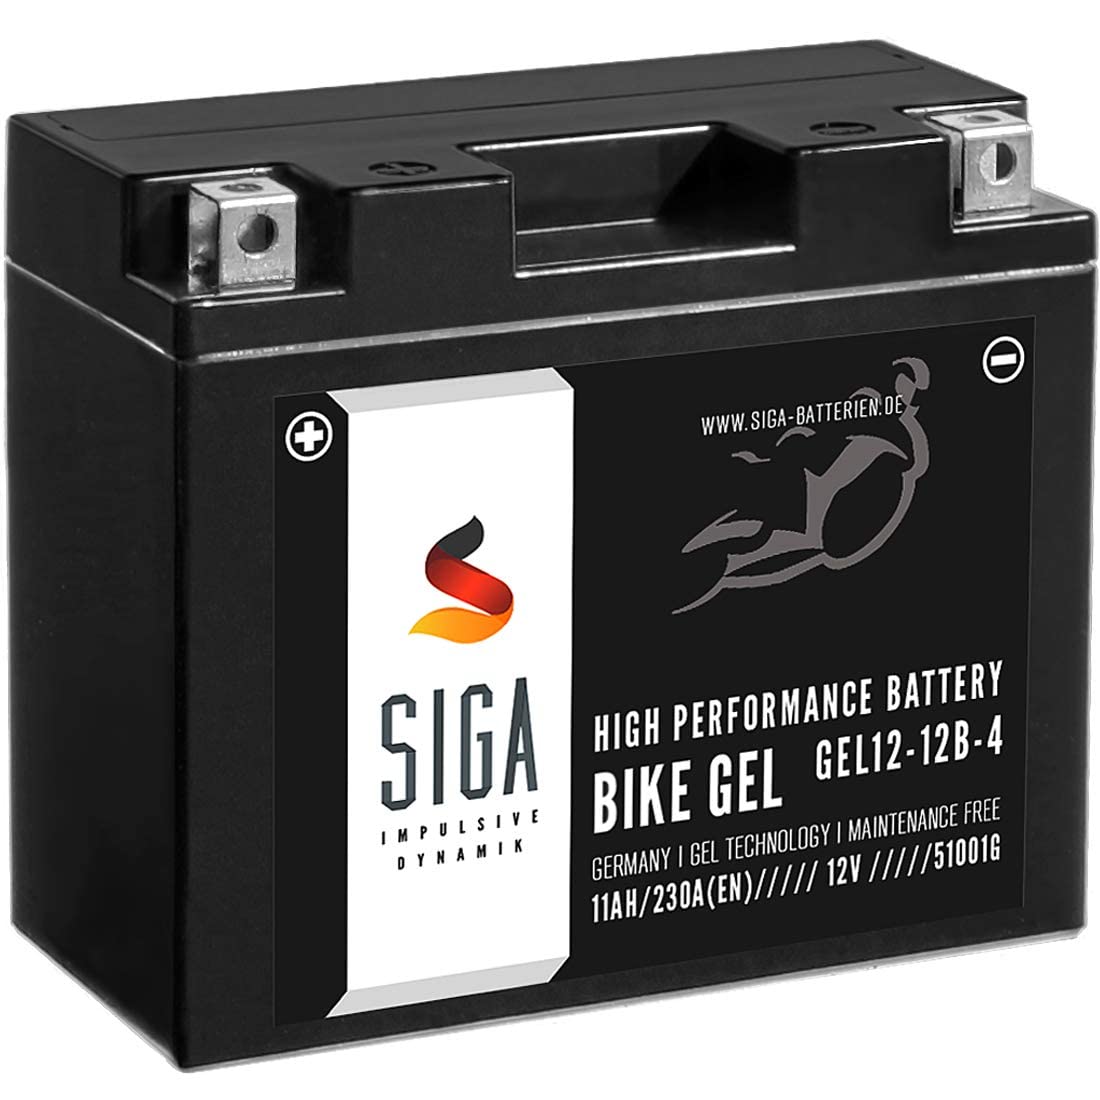 SIGA GEL Motorradbatterie 12V 11Ah 230A/EN GEL Batterie YT12-B4 GEL12-12B-4 YT12B-BS GT12-B4 FT12B-4 51001 von SIGA IMPULSIVE DYNAMIK